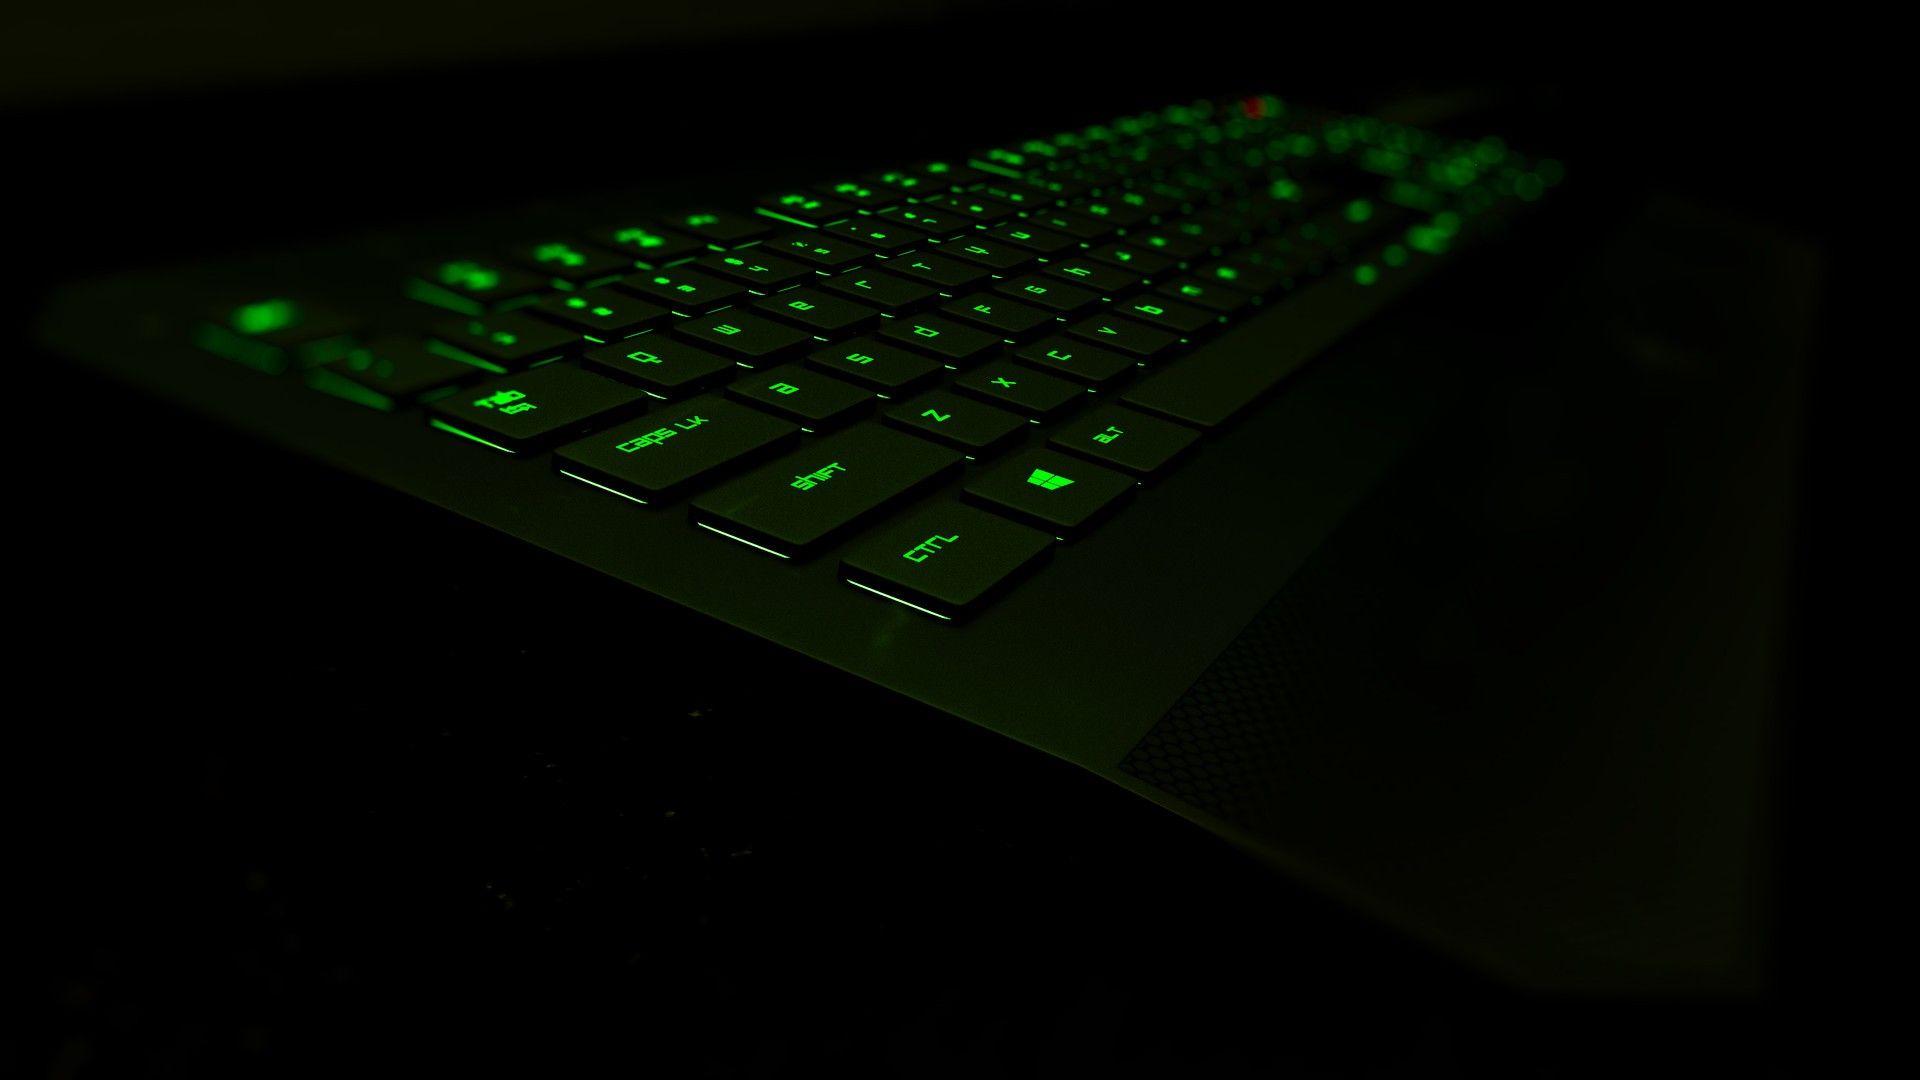 Wallpaper, black, 3D, glowing, green, technology, keyboards, Razer